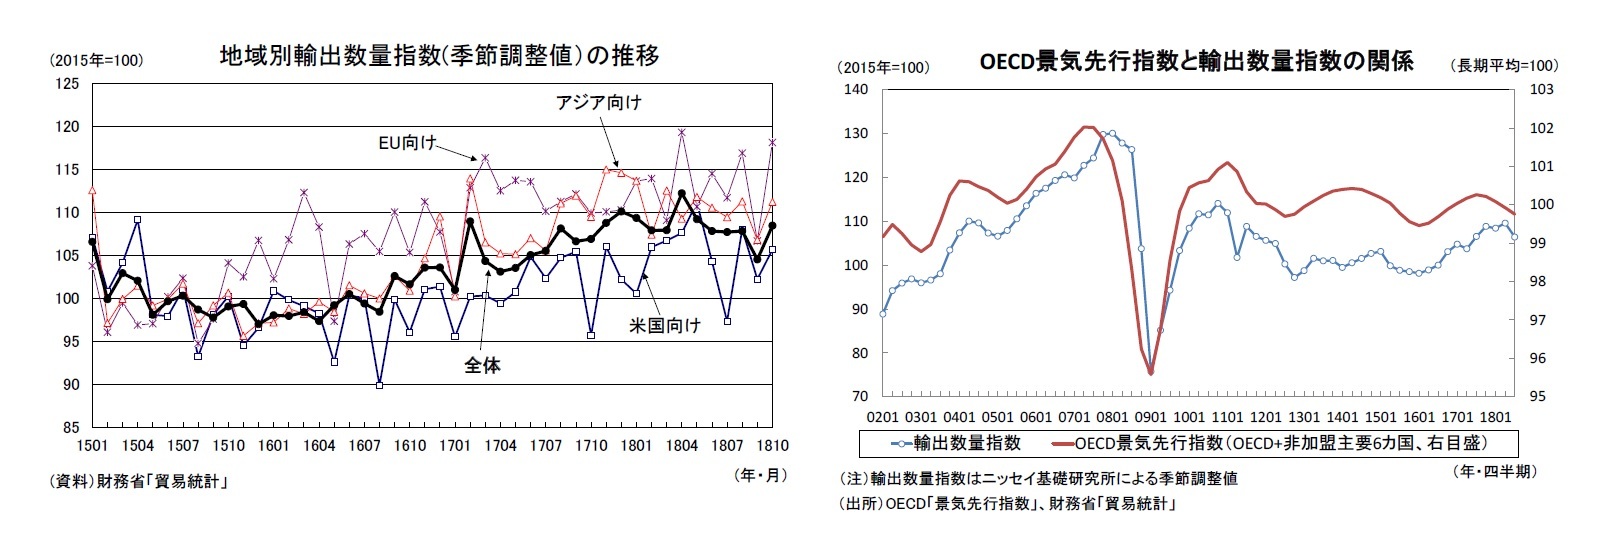 地域別輸出数量指数(季節調整値）の推移/OECD景気先行指数と輸出数量指数の関係